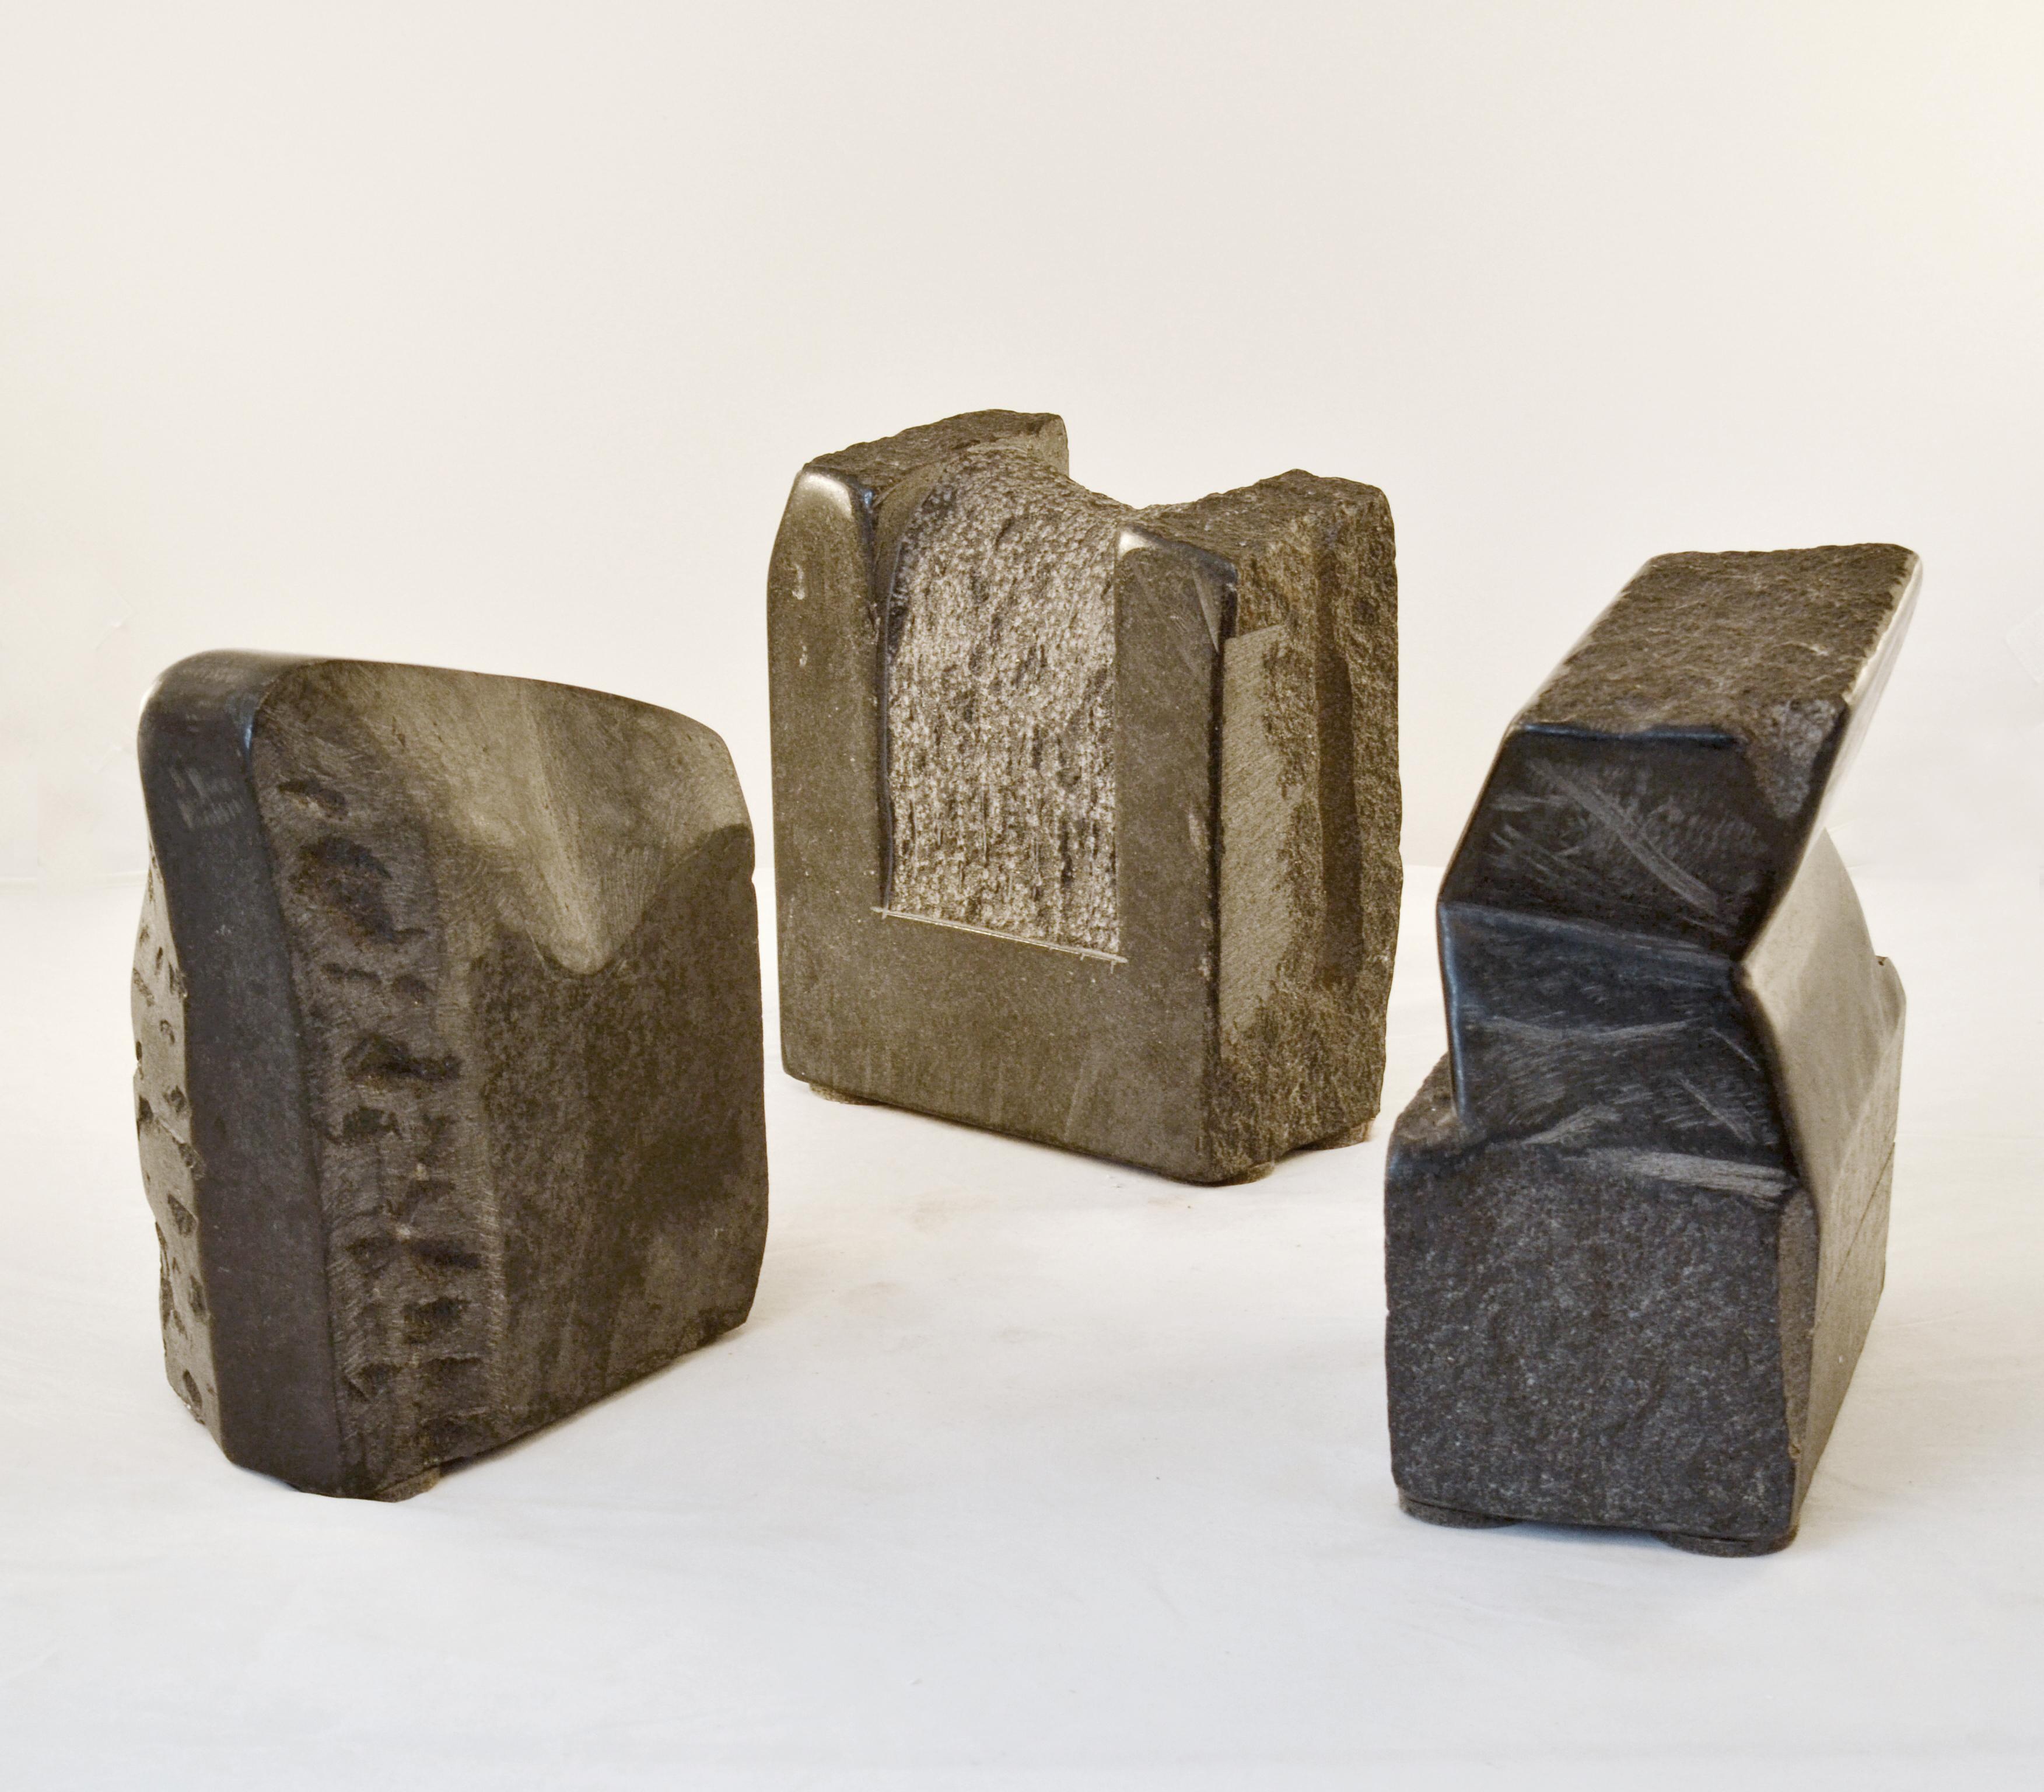 Abstrakte Skulptur aus Granit, handgeschnitzt von dem niederländischen Künstler J. Metaho, aus den 1970er Jahren. Der teilweise polierte Granit ist mit schwebenden Ebenen an schrägen Stellen von beiden Seiten der Skulptur aus bearbeitet. Der gesamte